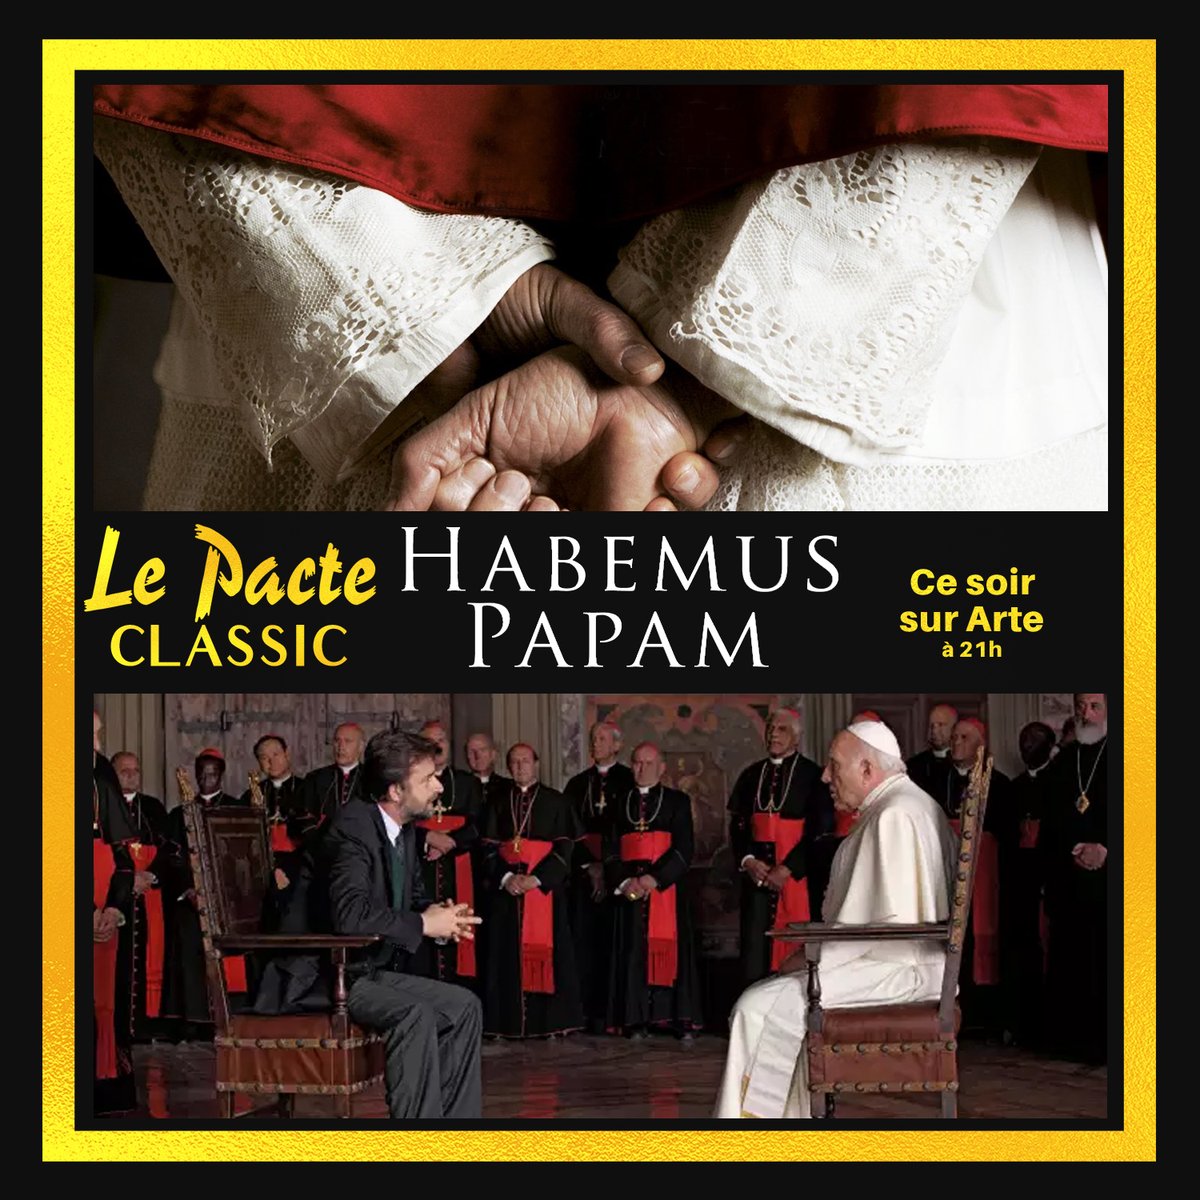 JOUR 22.Ce soir sur  @ARTEfr, ne manquez pas  #HabemusPapam de Nanni Moretti. Une douce fable sur la représentation du Pape par le cinéaste italien. Immanquable !  #LePacteClassic  #ConfinementJour21 Dispo sur le site  @ARTEfr et ce soir à 21h   http://bit.ly/LP_HabemusPapam 